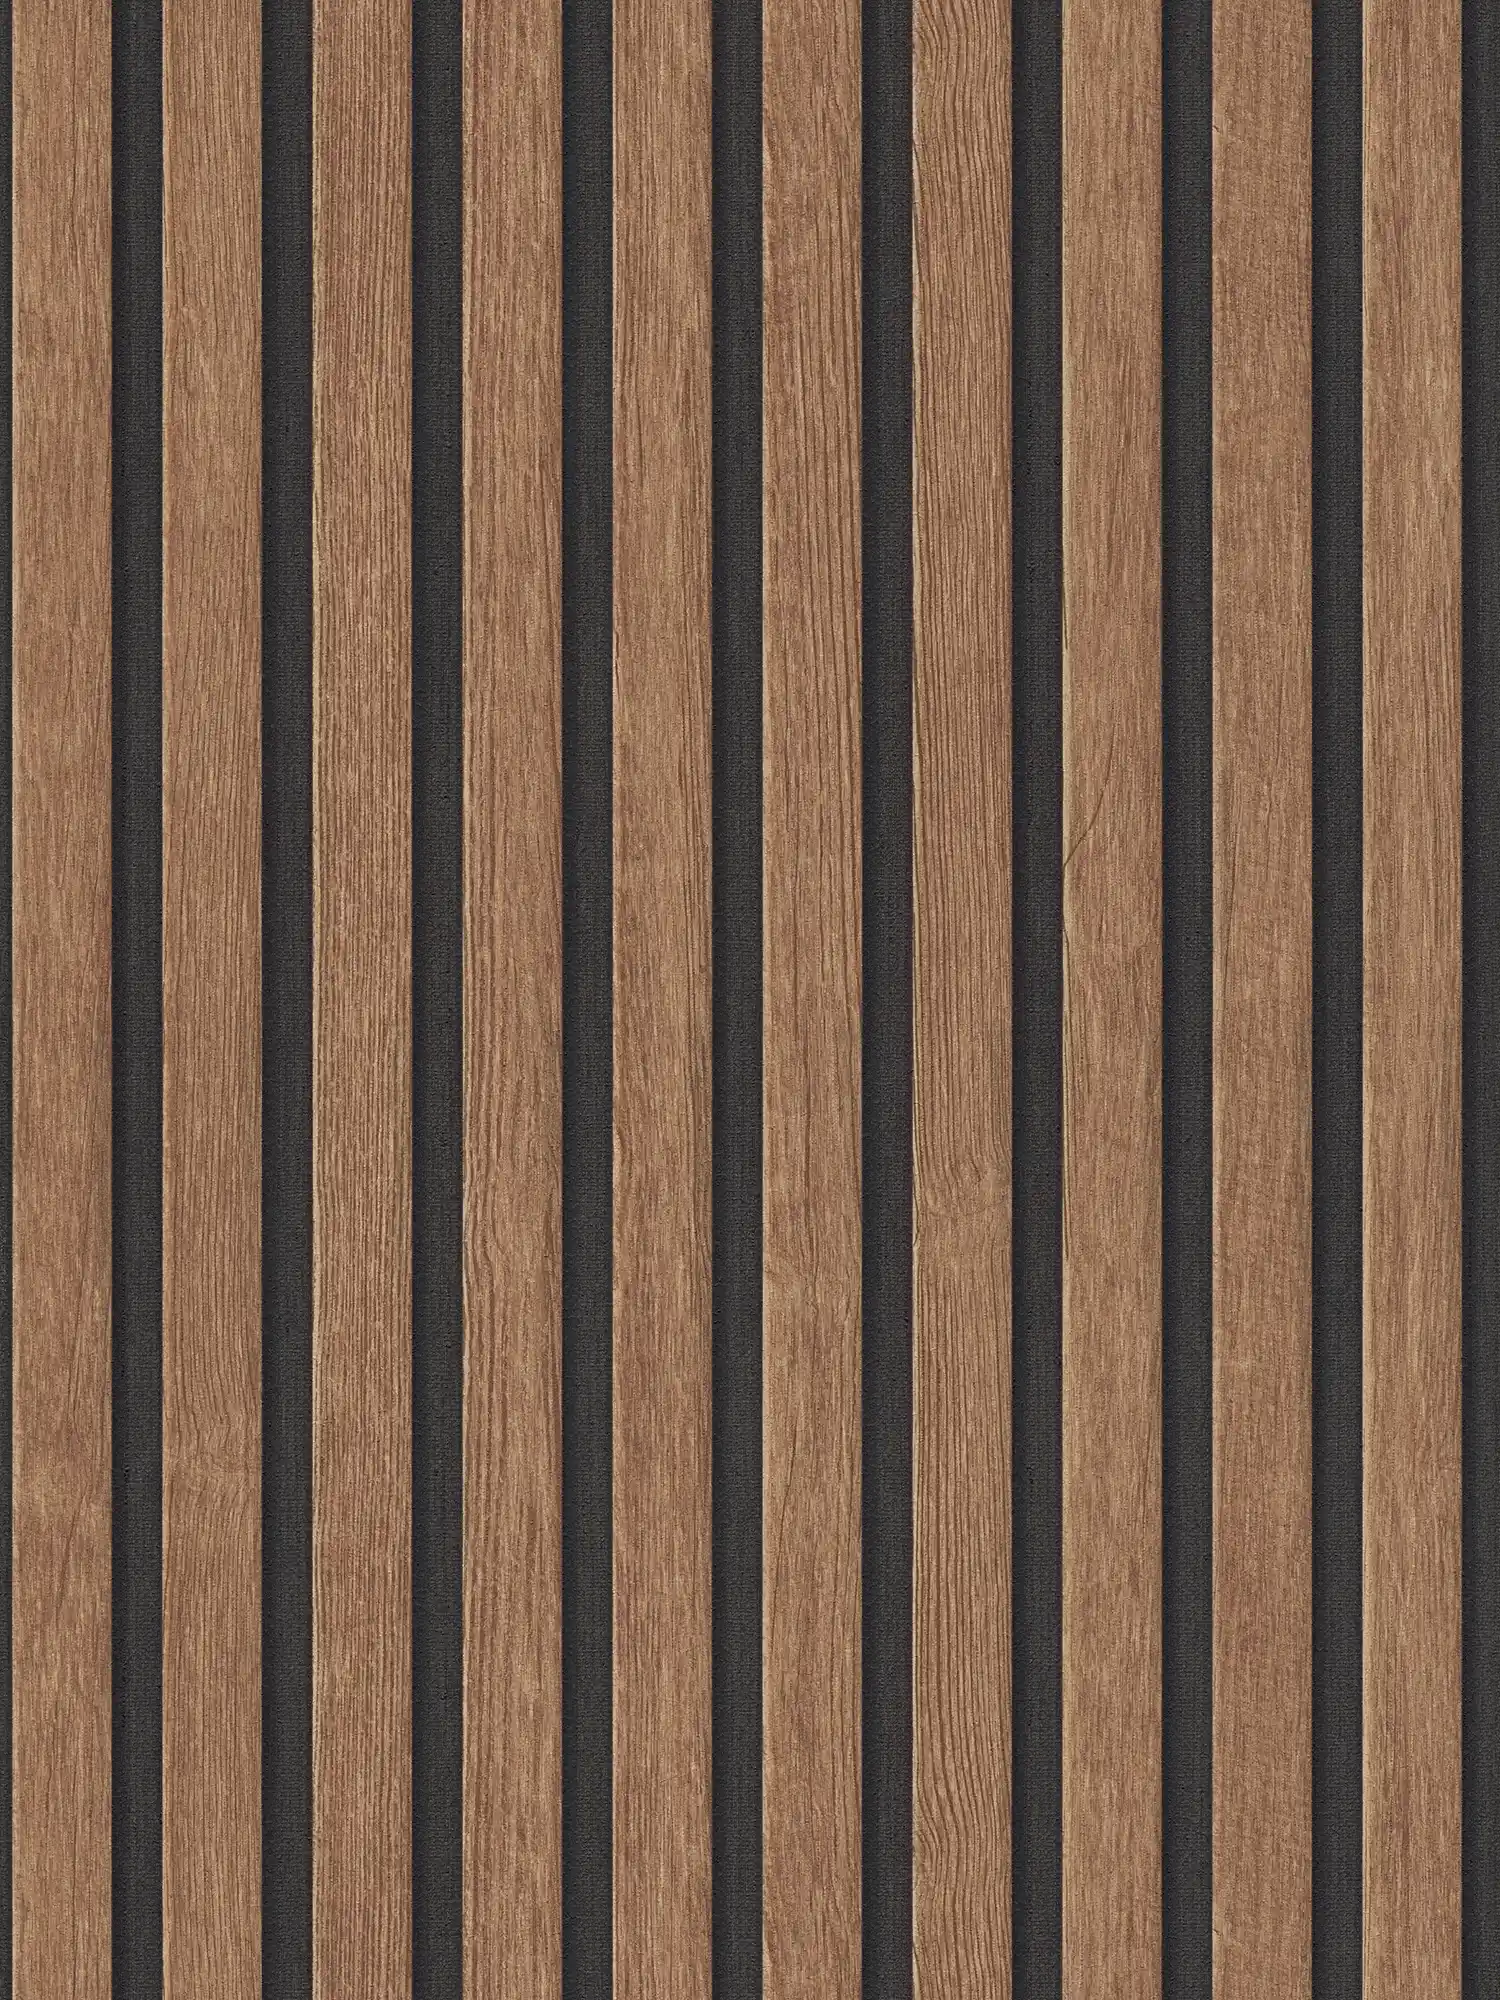 Akoestische panelen vliesbehang realistische houtlook - Bruin, Zwart
